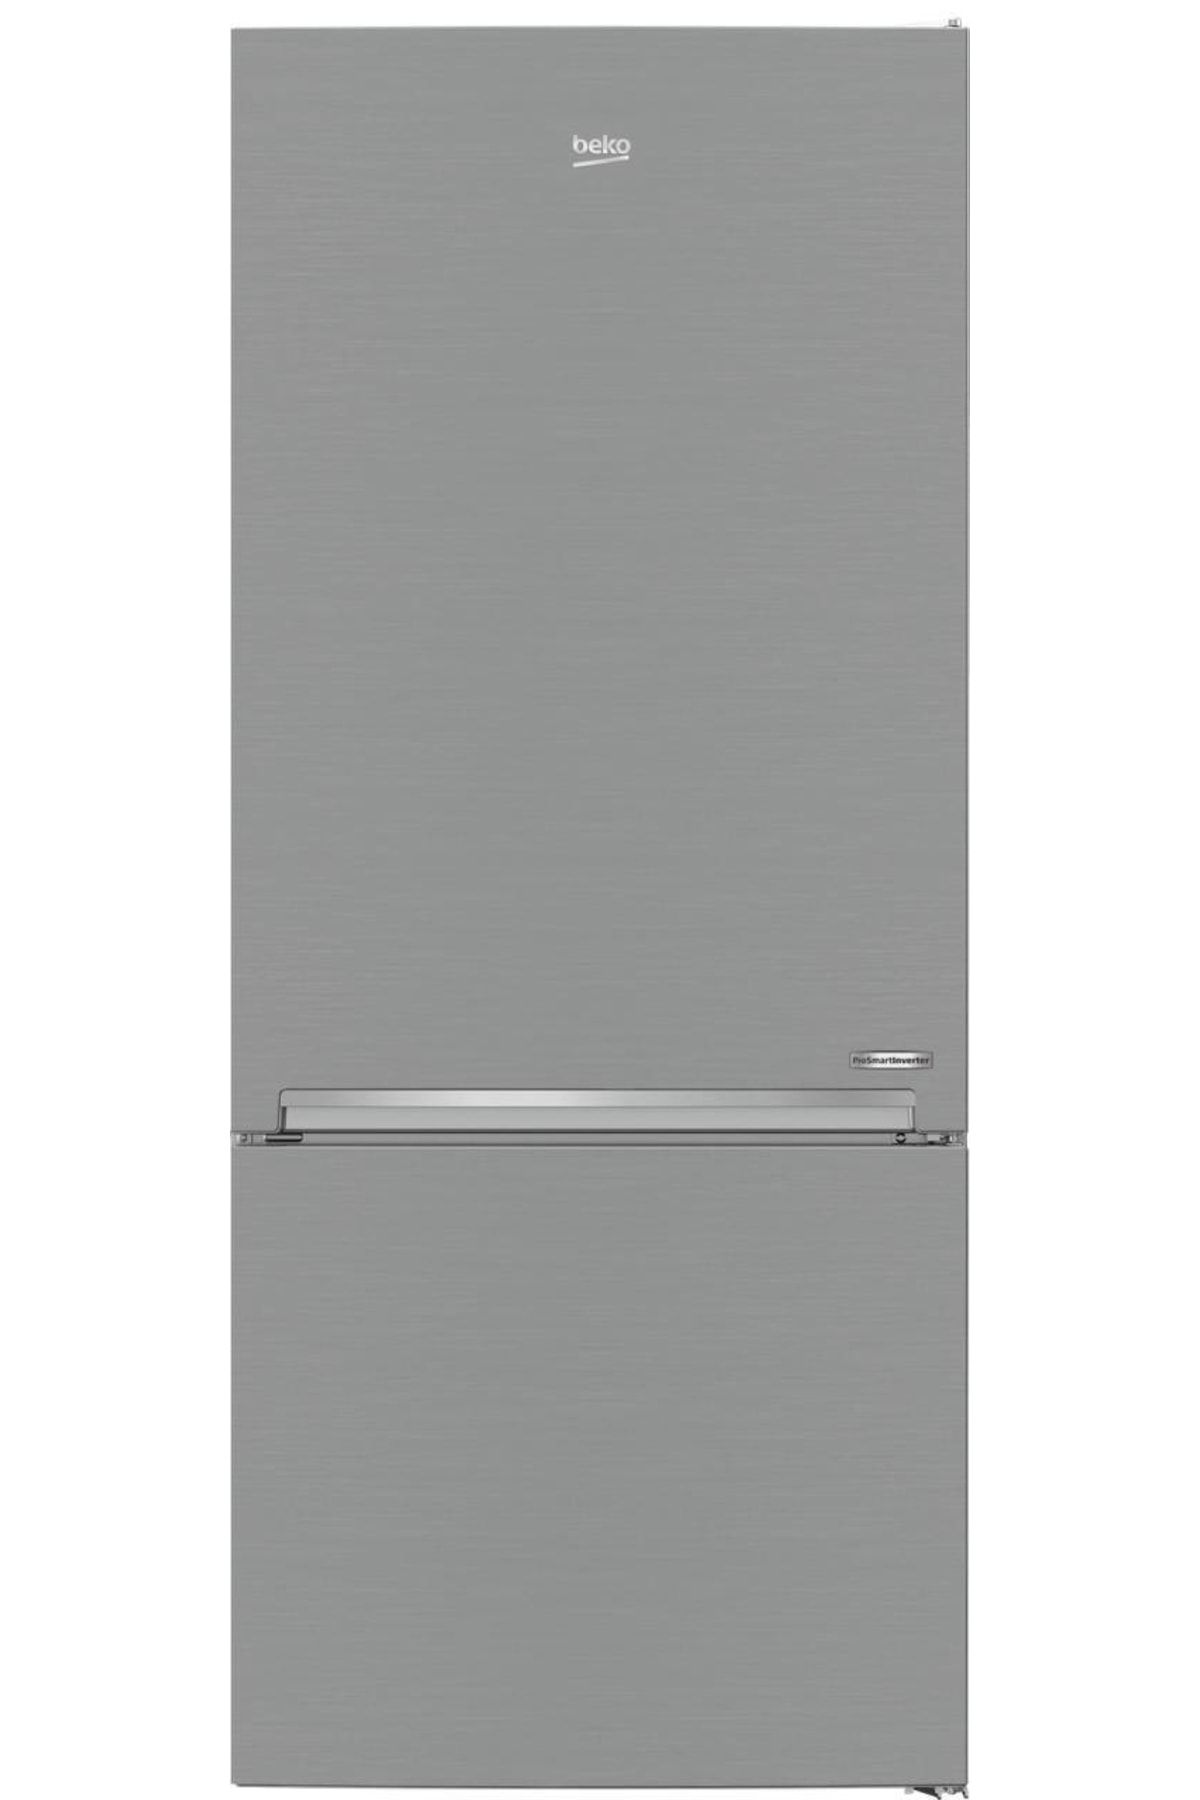 Beko 670482 Mı Kombi Tipi No Frost Buzdolabı